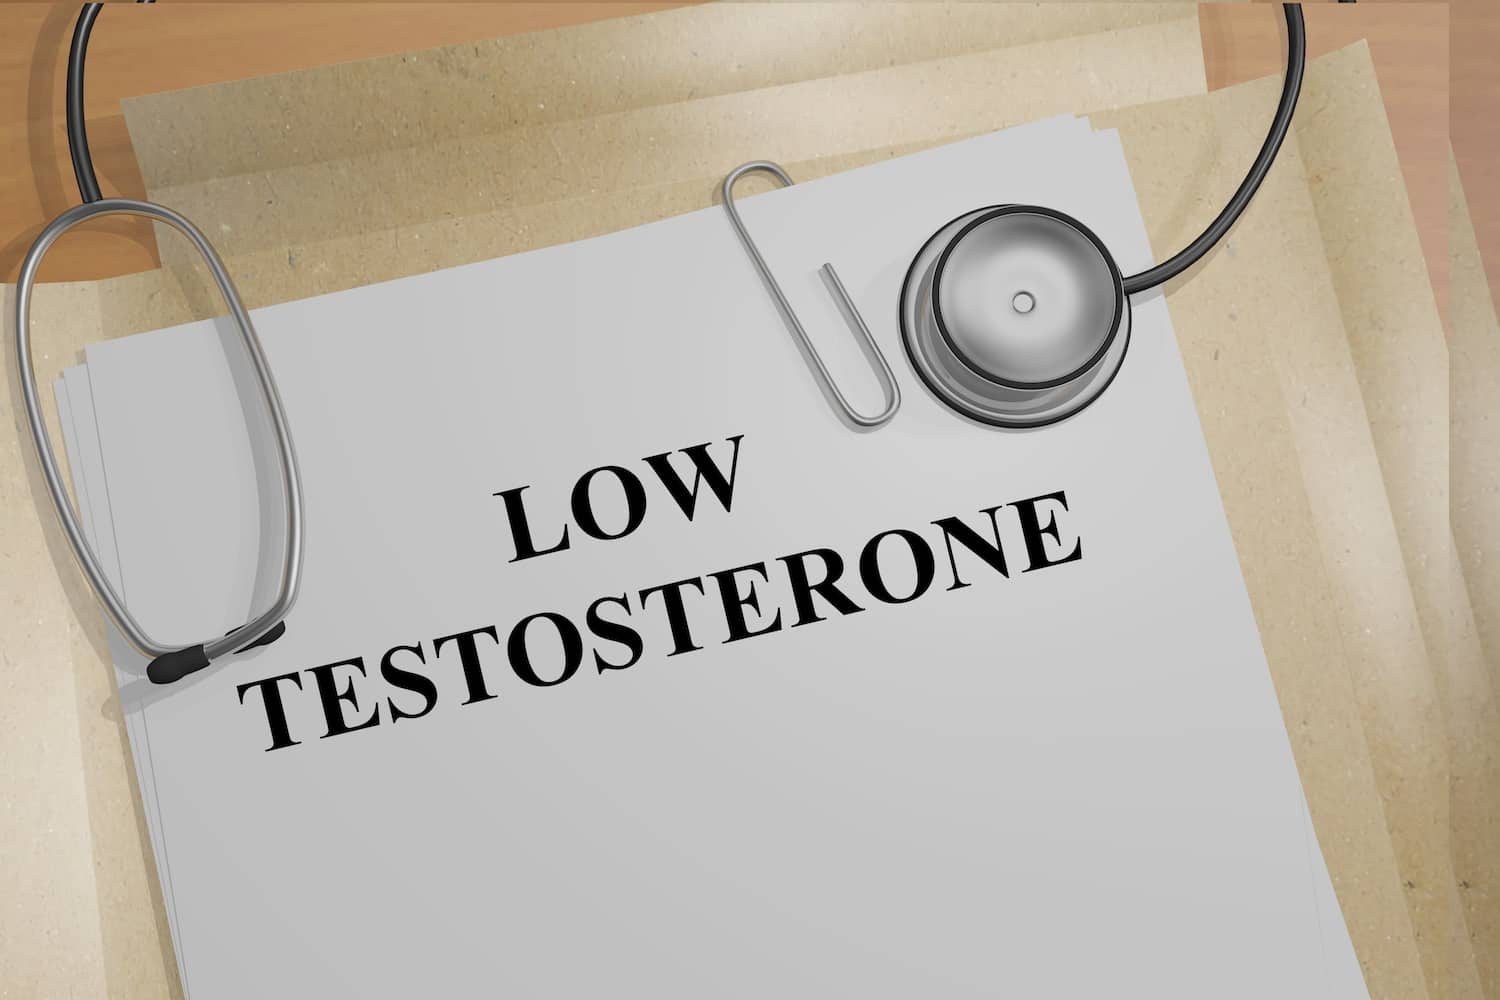 Συνδέεται η τεστοστερόνη με τον καρκίνο του προστάτη;